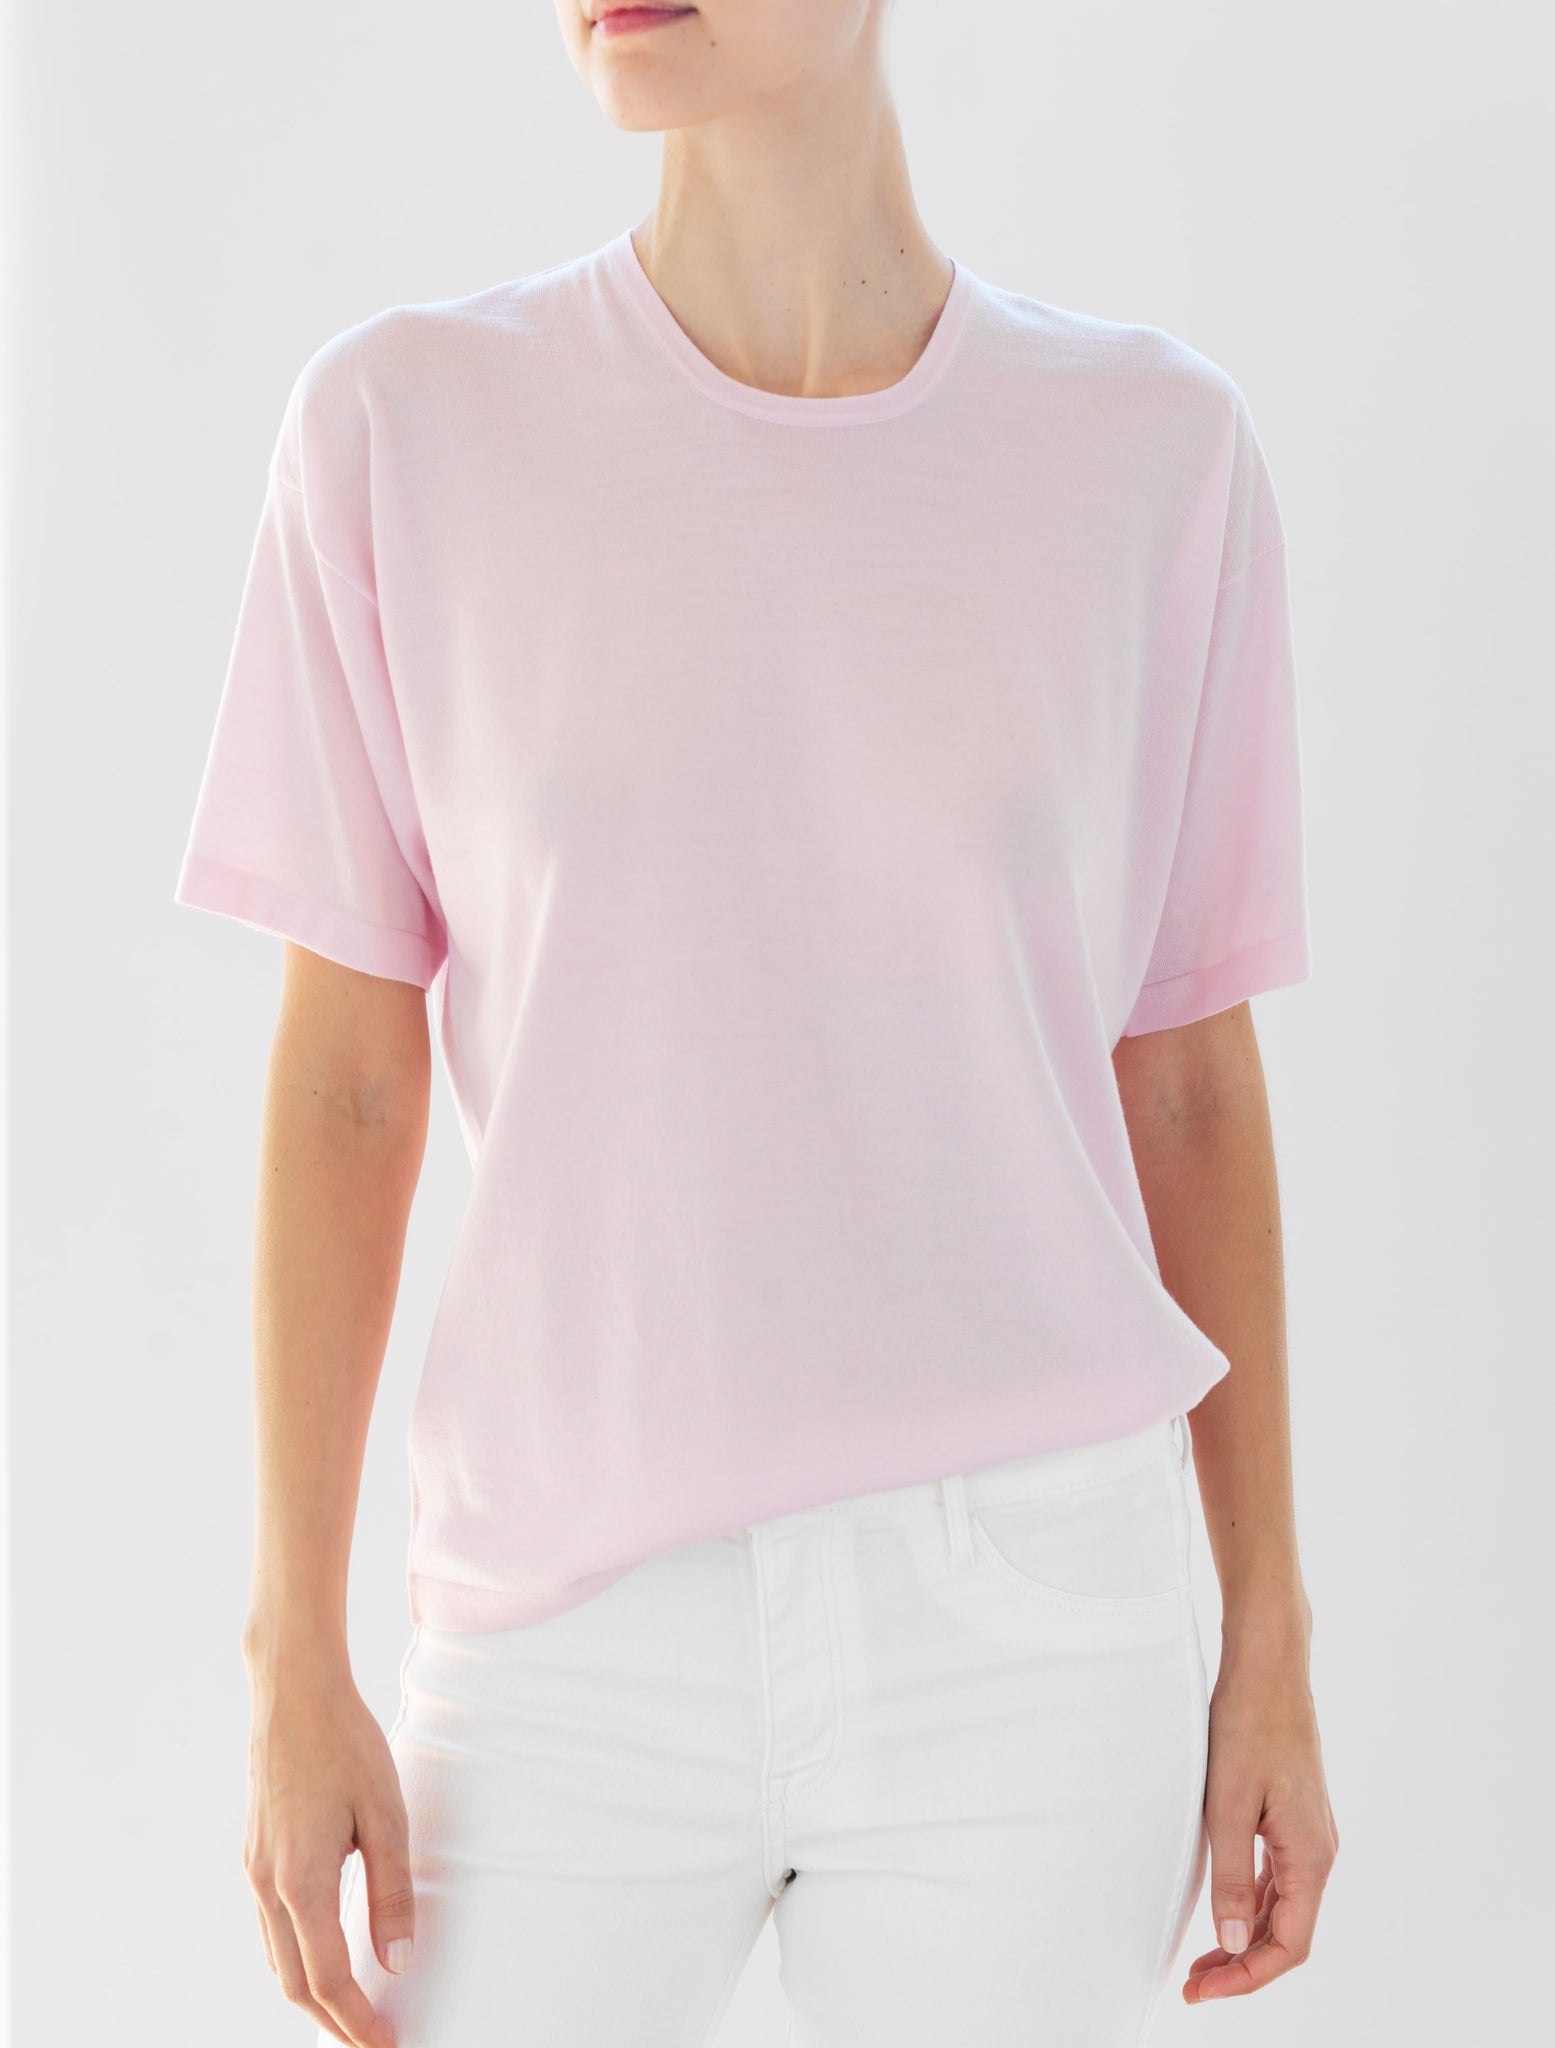 Luxo Knit T Round Neck - Pale Pink